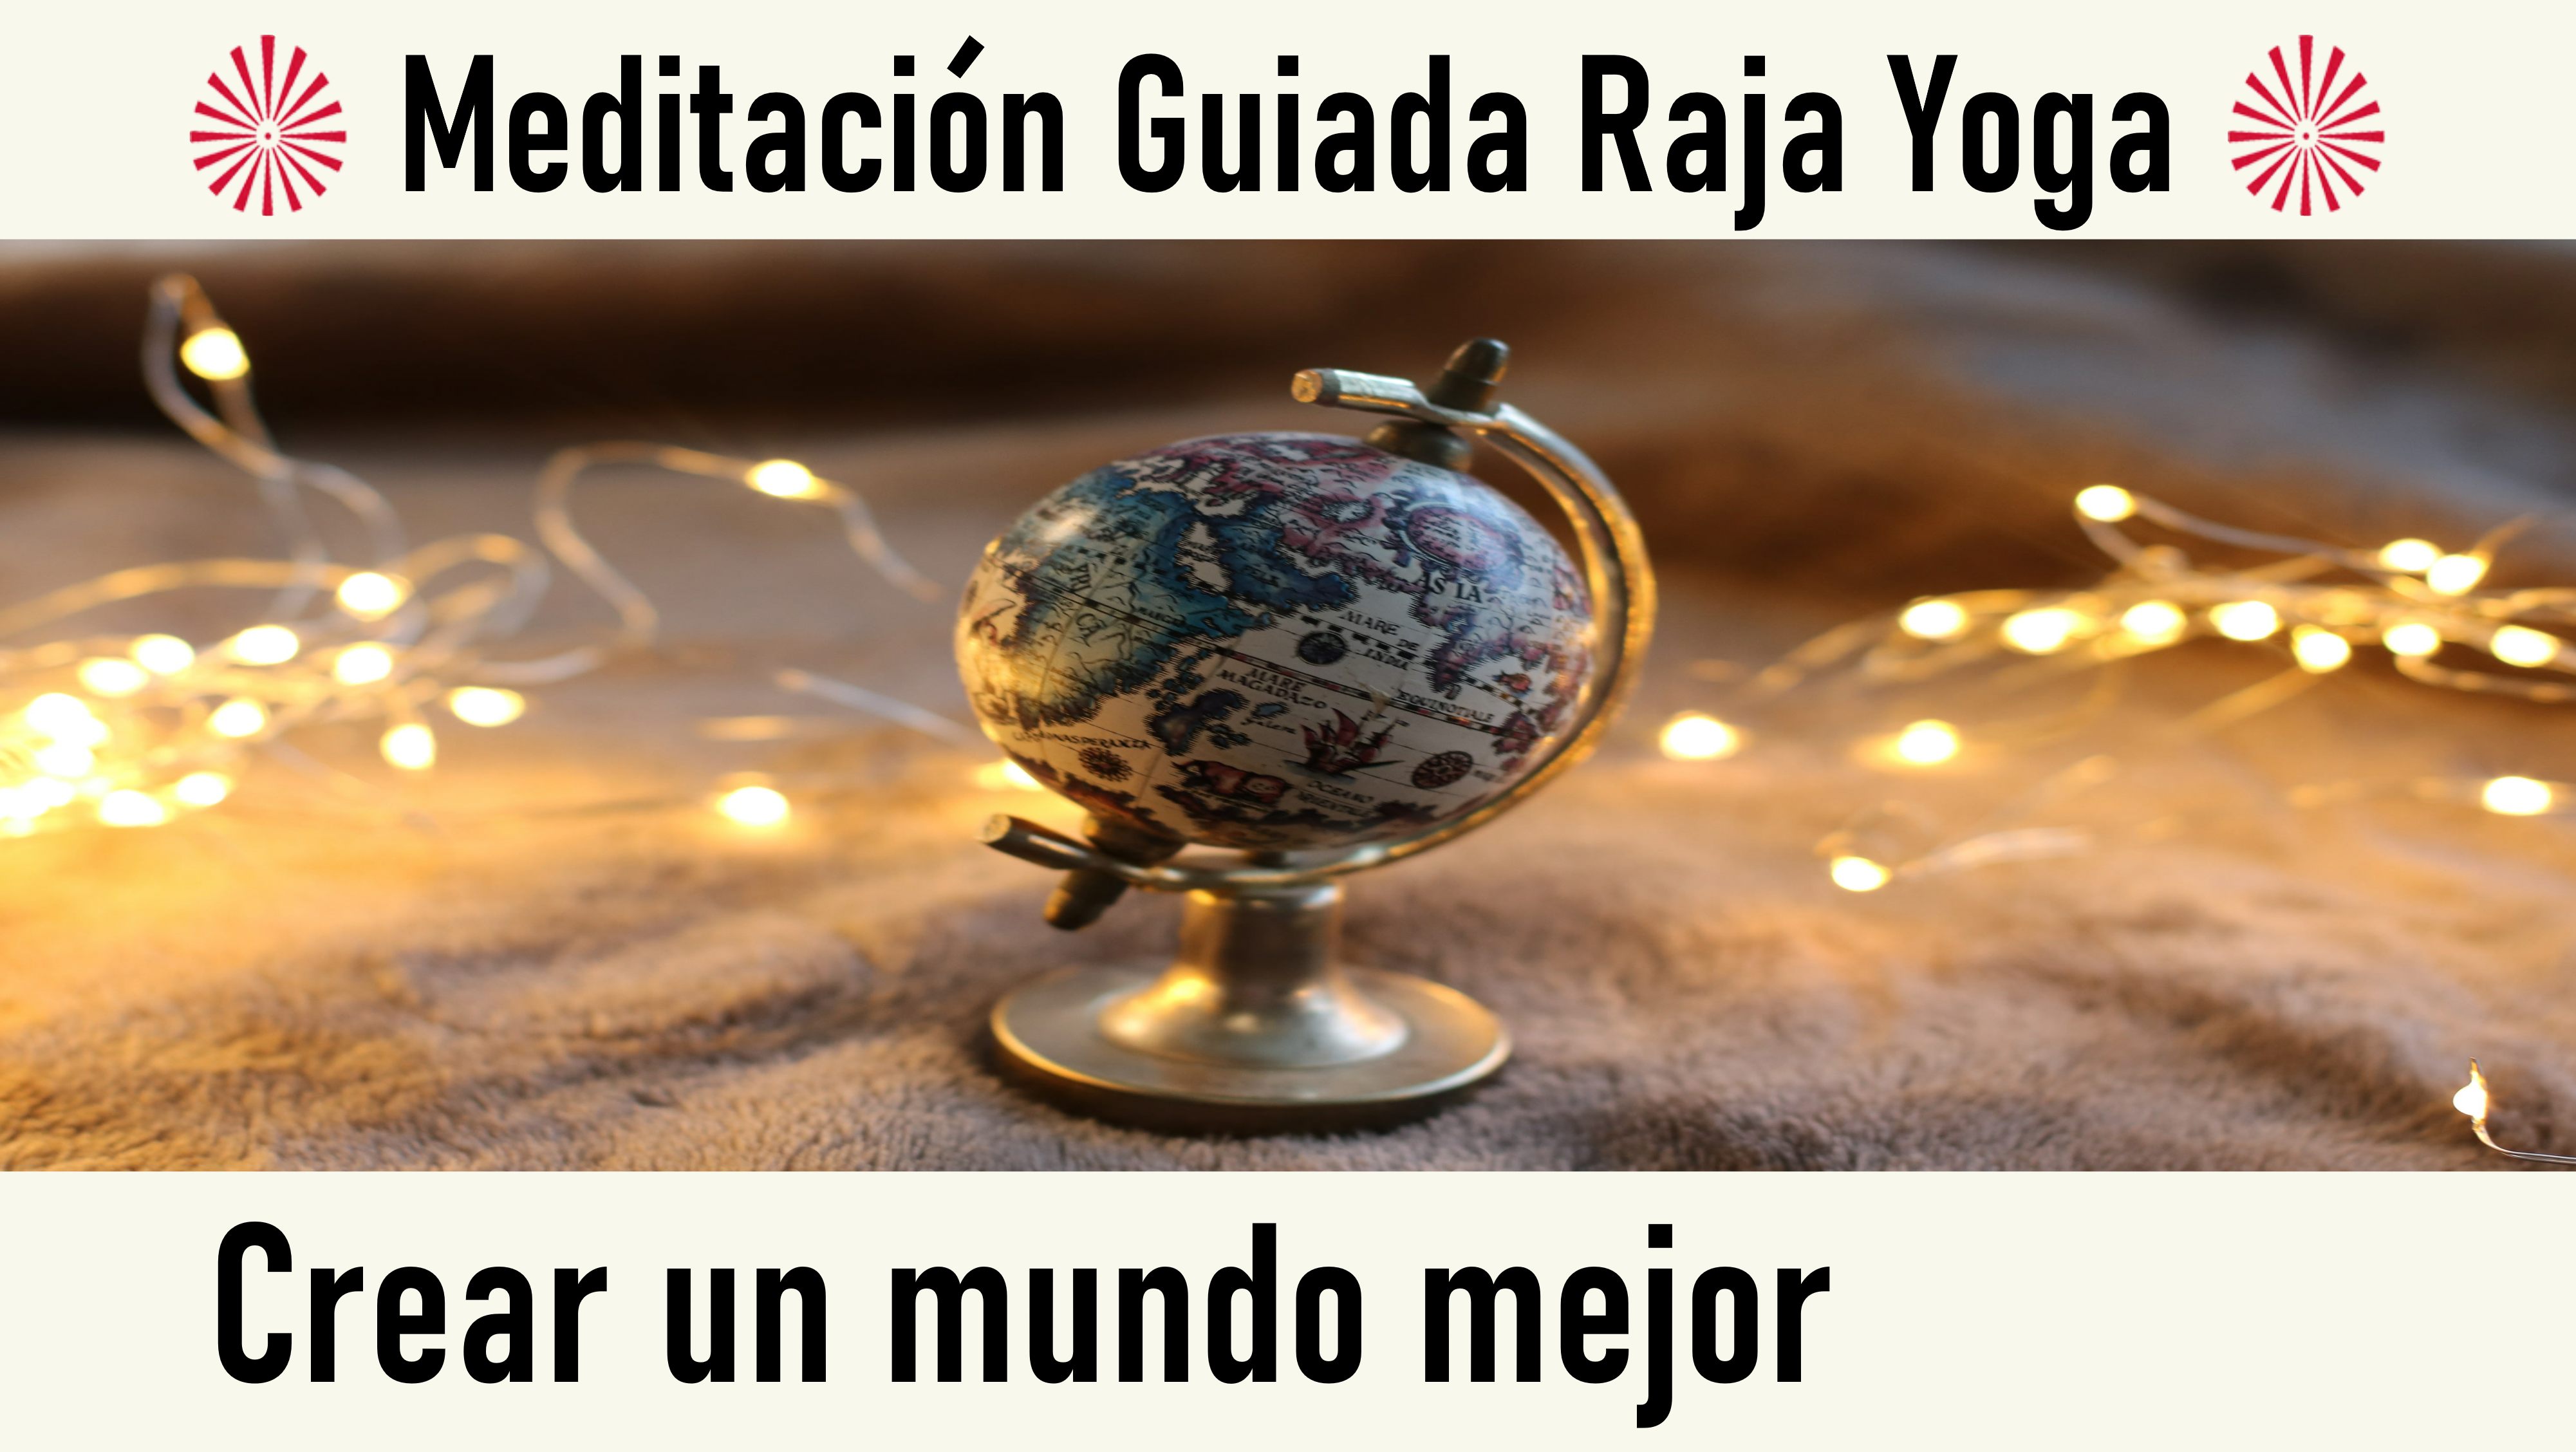 Meditación Raja Yoga: Crear un mundo mejor (27 Septiembre 2020) On-line desde Valencia